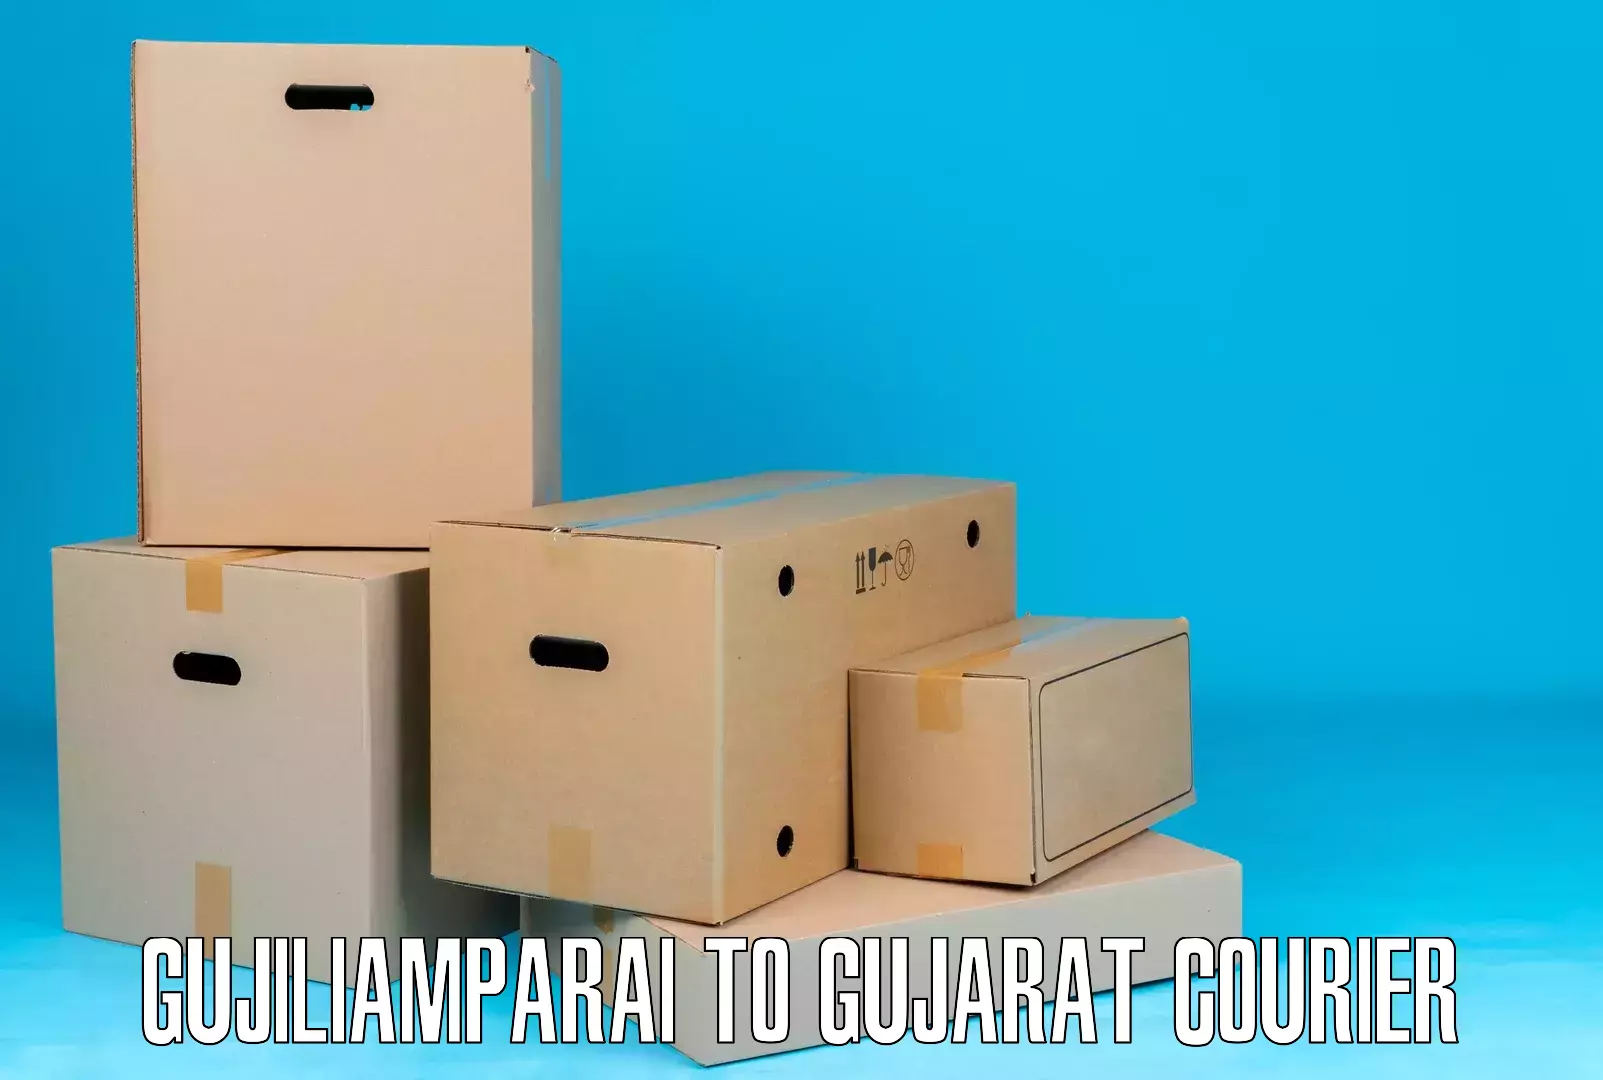 High-capacity shipping options in Gujiliamparai to Dhoraji